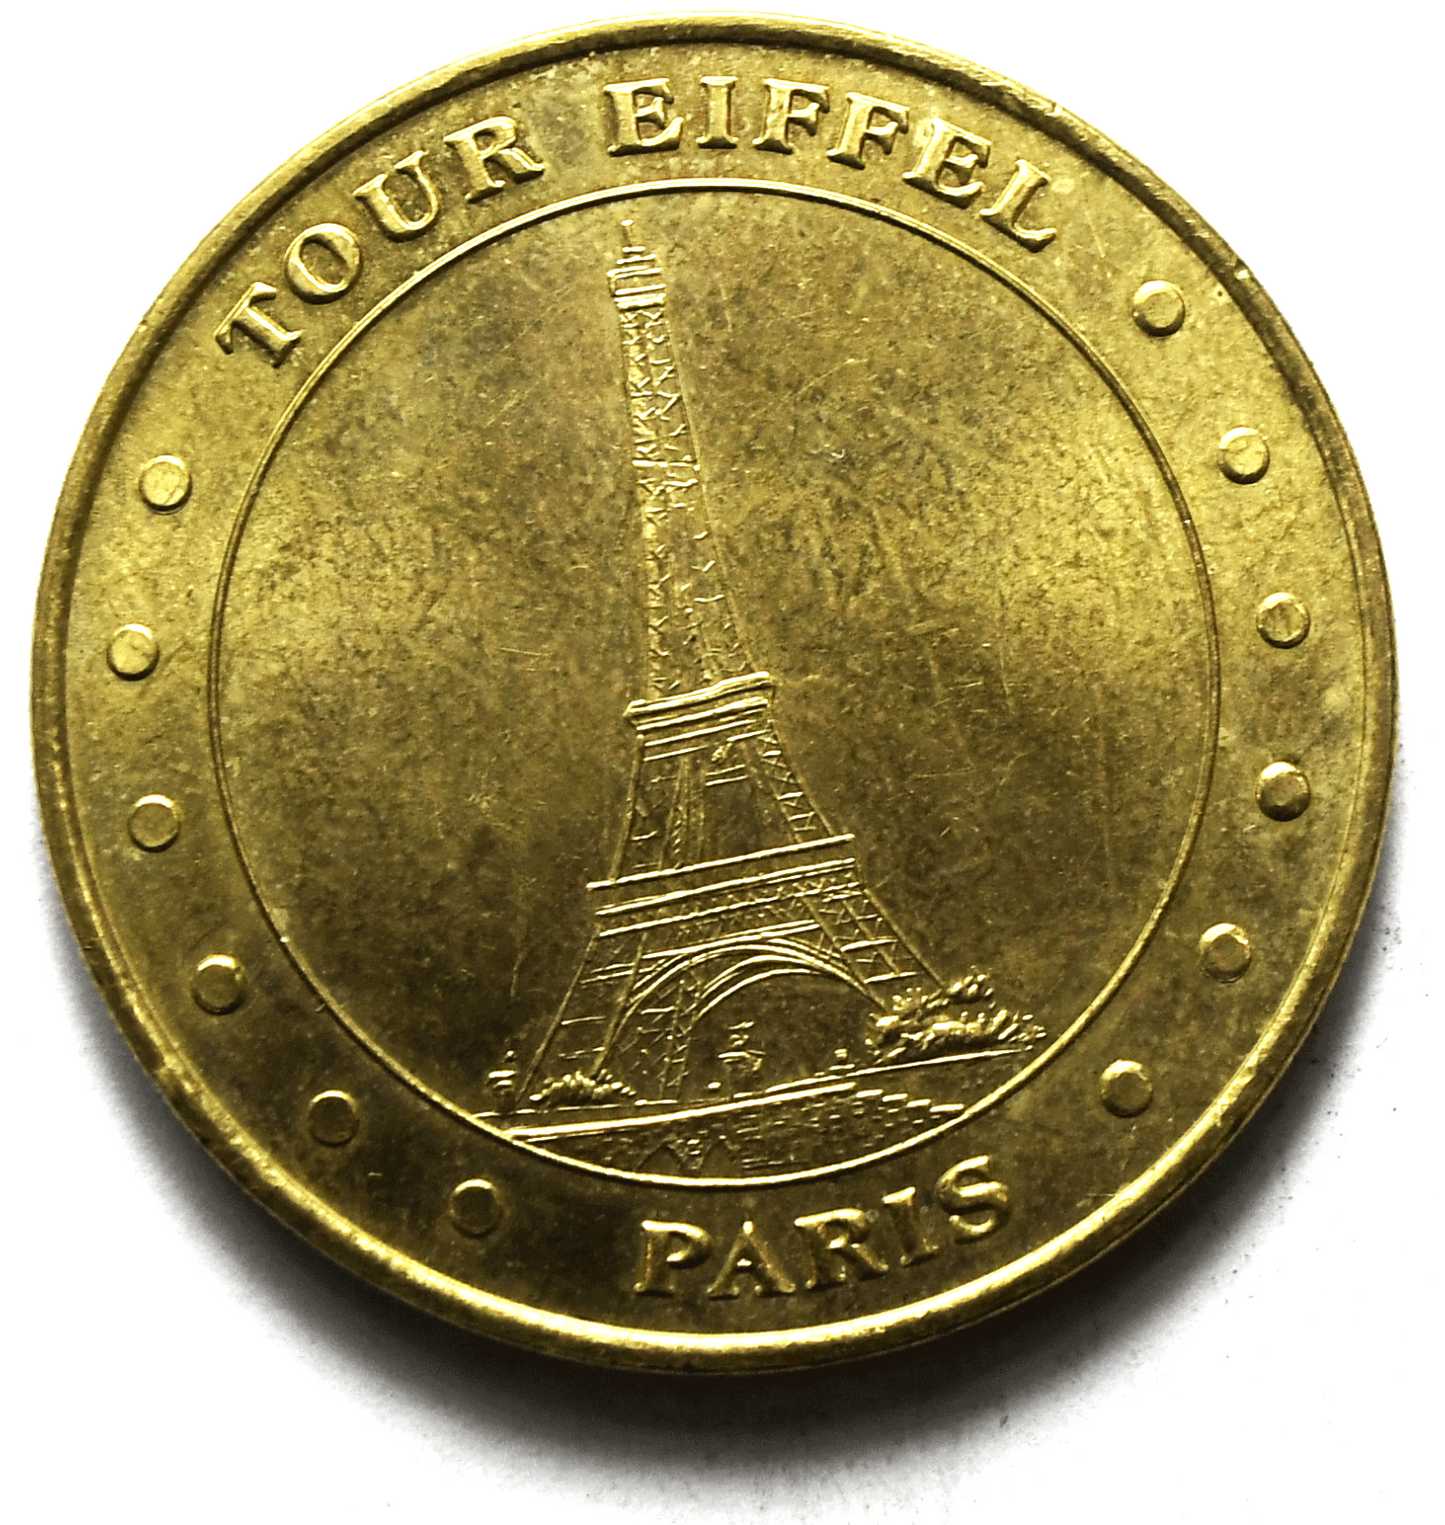 2000 Monnaie De Paris Eiffel Tower Official Medal Souvenir 33mm